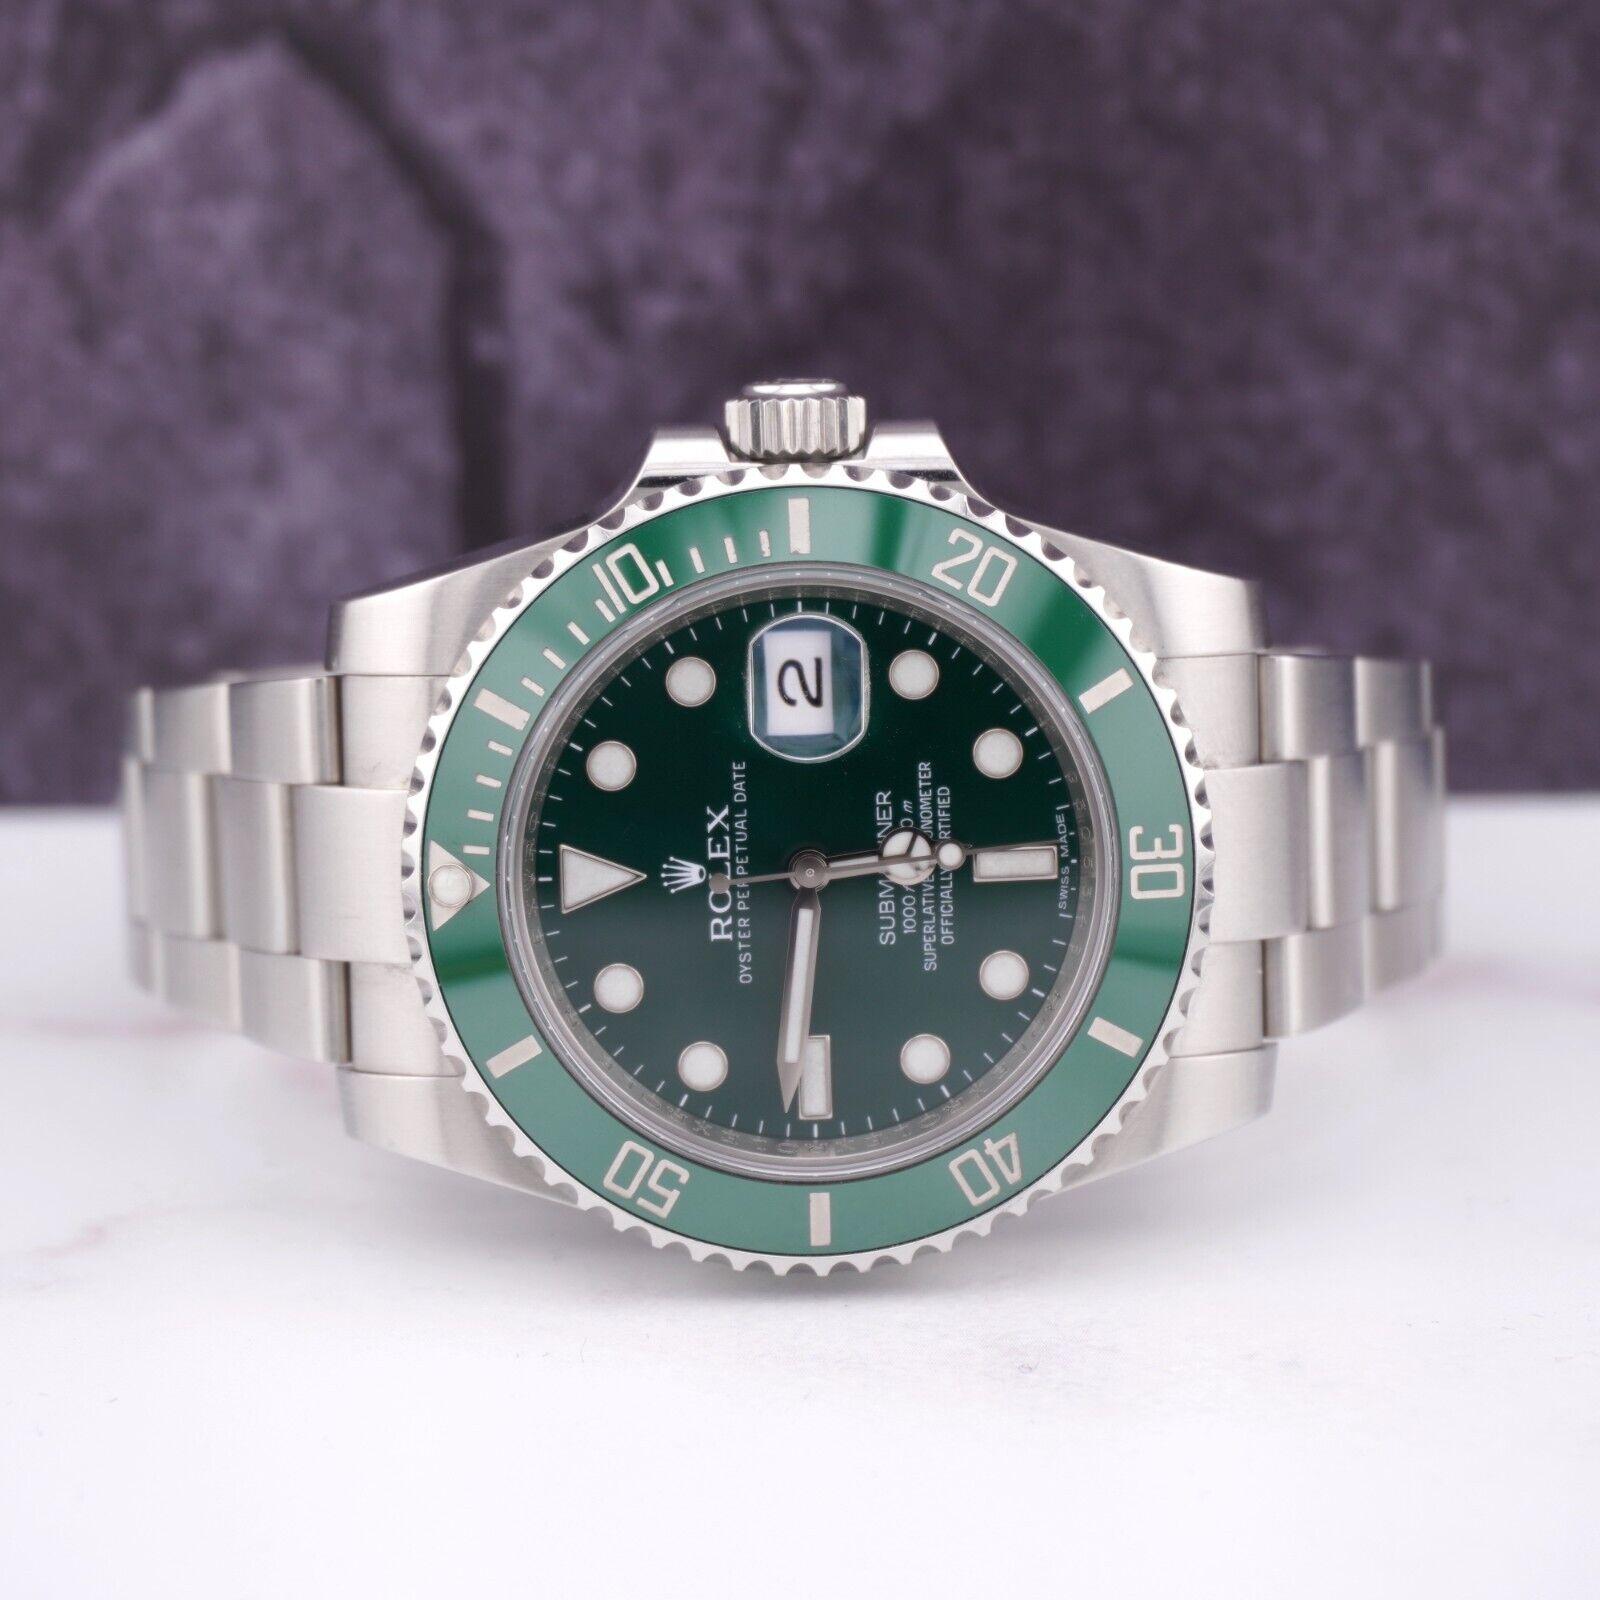 Rolex Submariner Hulk 40mm Uhr. Ein Pre-owned Uhr w / Original-Box und 2011 Karte. Uhr ist 100% authentisch und kommt mit Echtheitskarte. Watch Reference ist 116610LV und ist in ausgezeichnetem Zustand (siehe Bilder). Das Zifferblatt und die Lünette